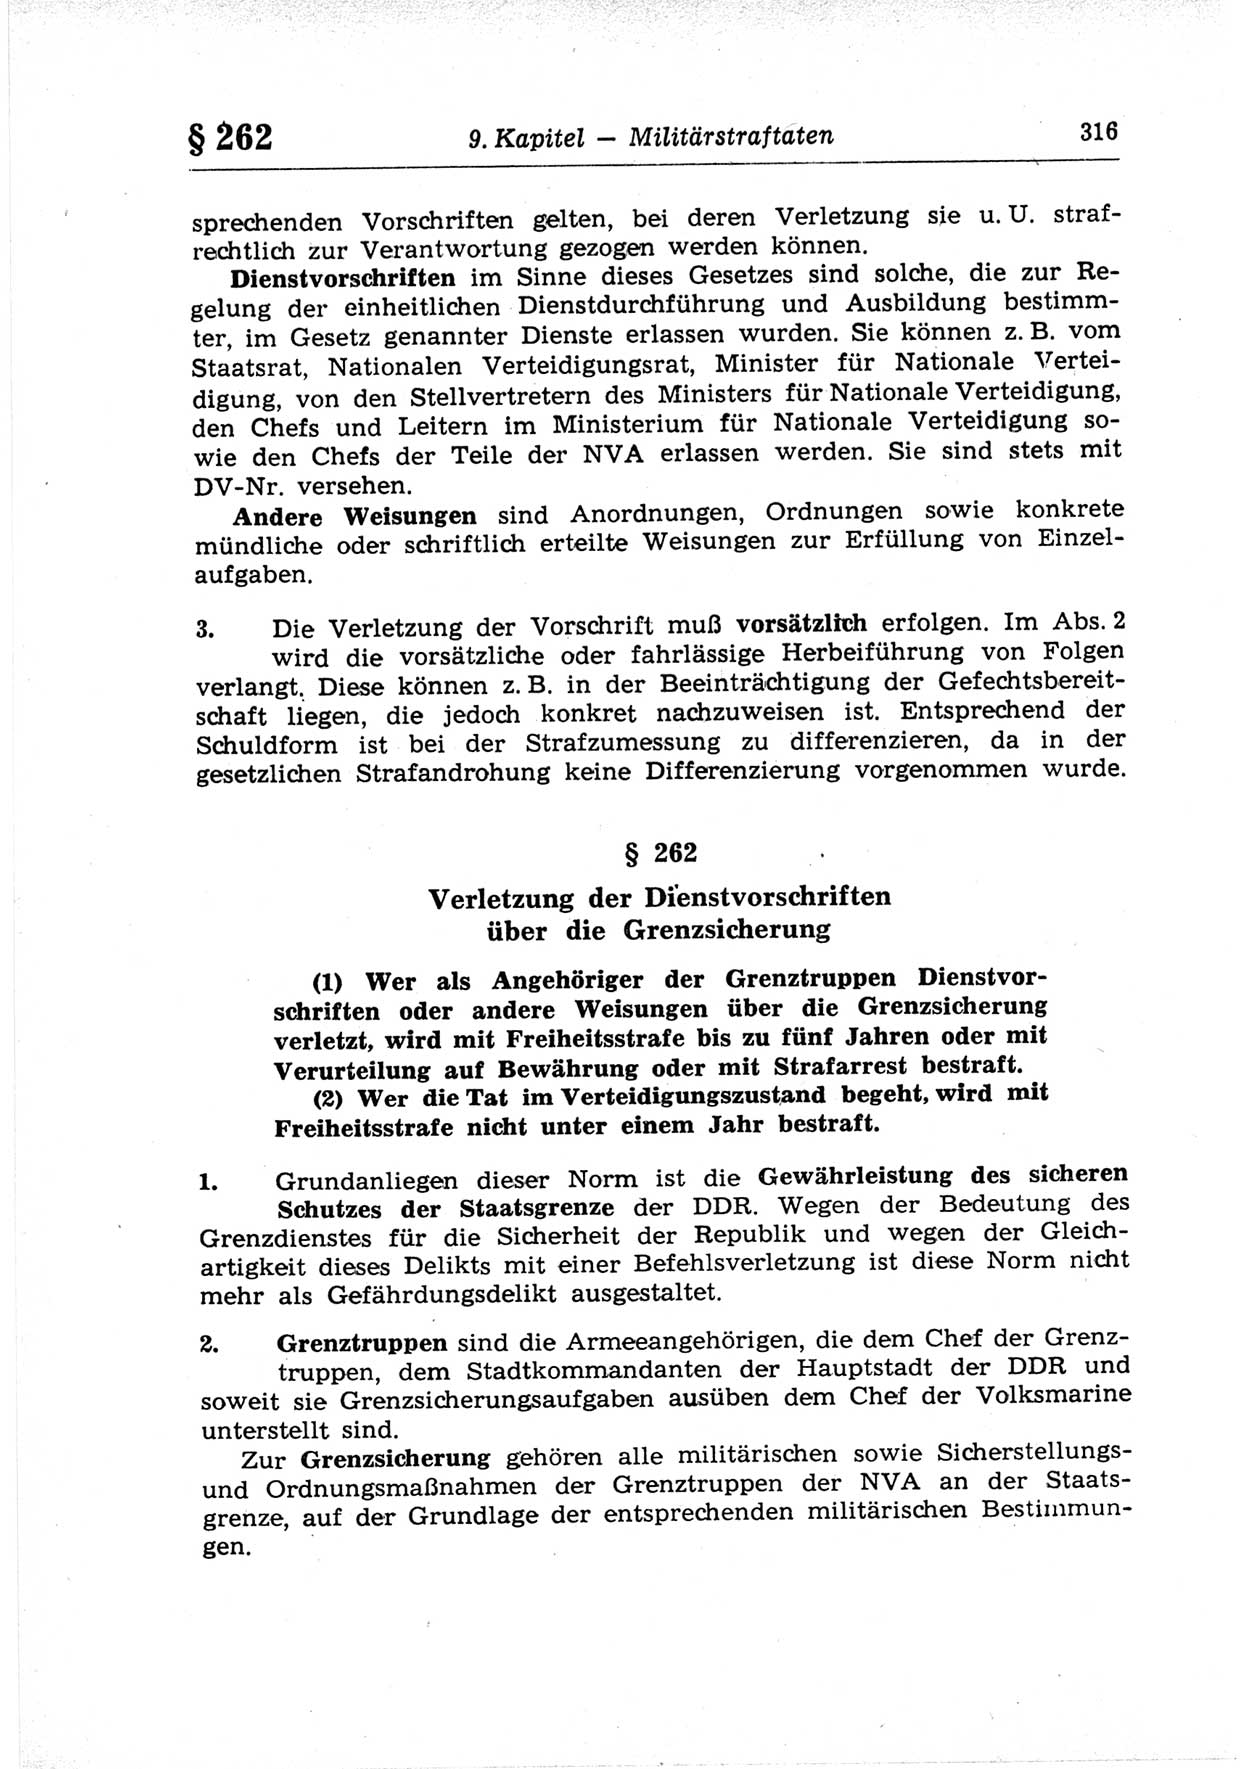 Strafrecht der Deutschen Demokratischen Republik (DDR), Lehrkommentar zum Strafgesetzbuch (StGB), Besonderer Teil 1969, Seite 316 (Strafr. DDR Lehrkomm. StGB BT 1969, S. 316)